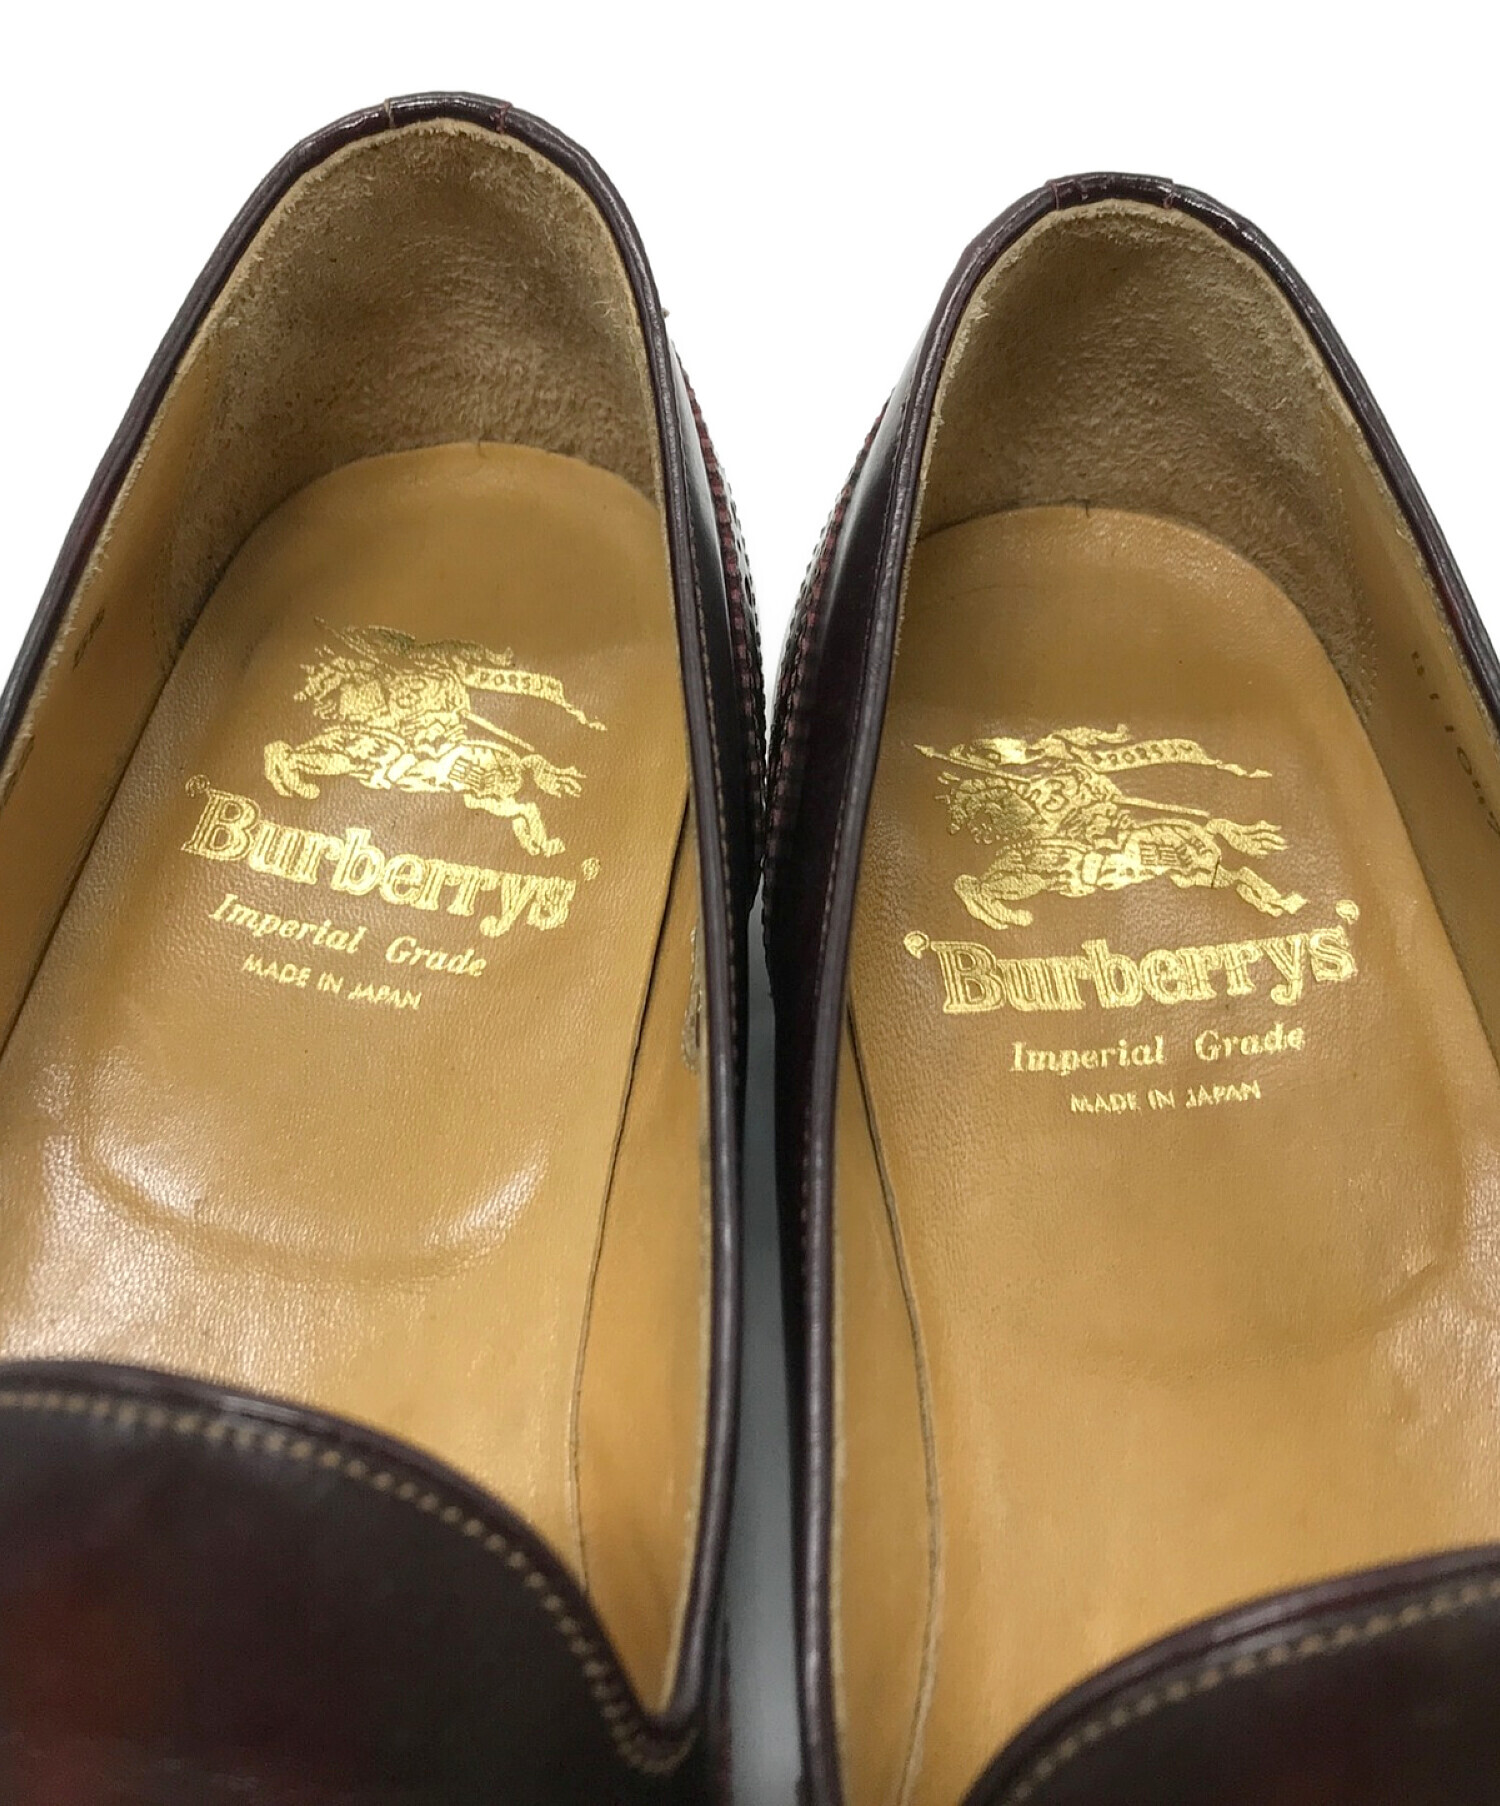 Burberry's バーバリーズ ウィングチップタッセルローファー ブラウン サイズ:5